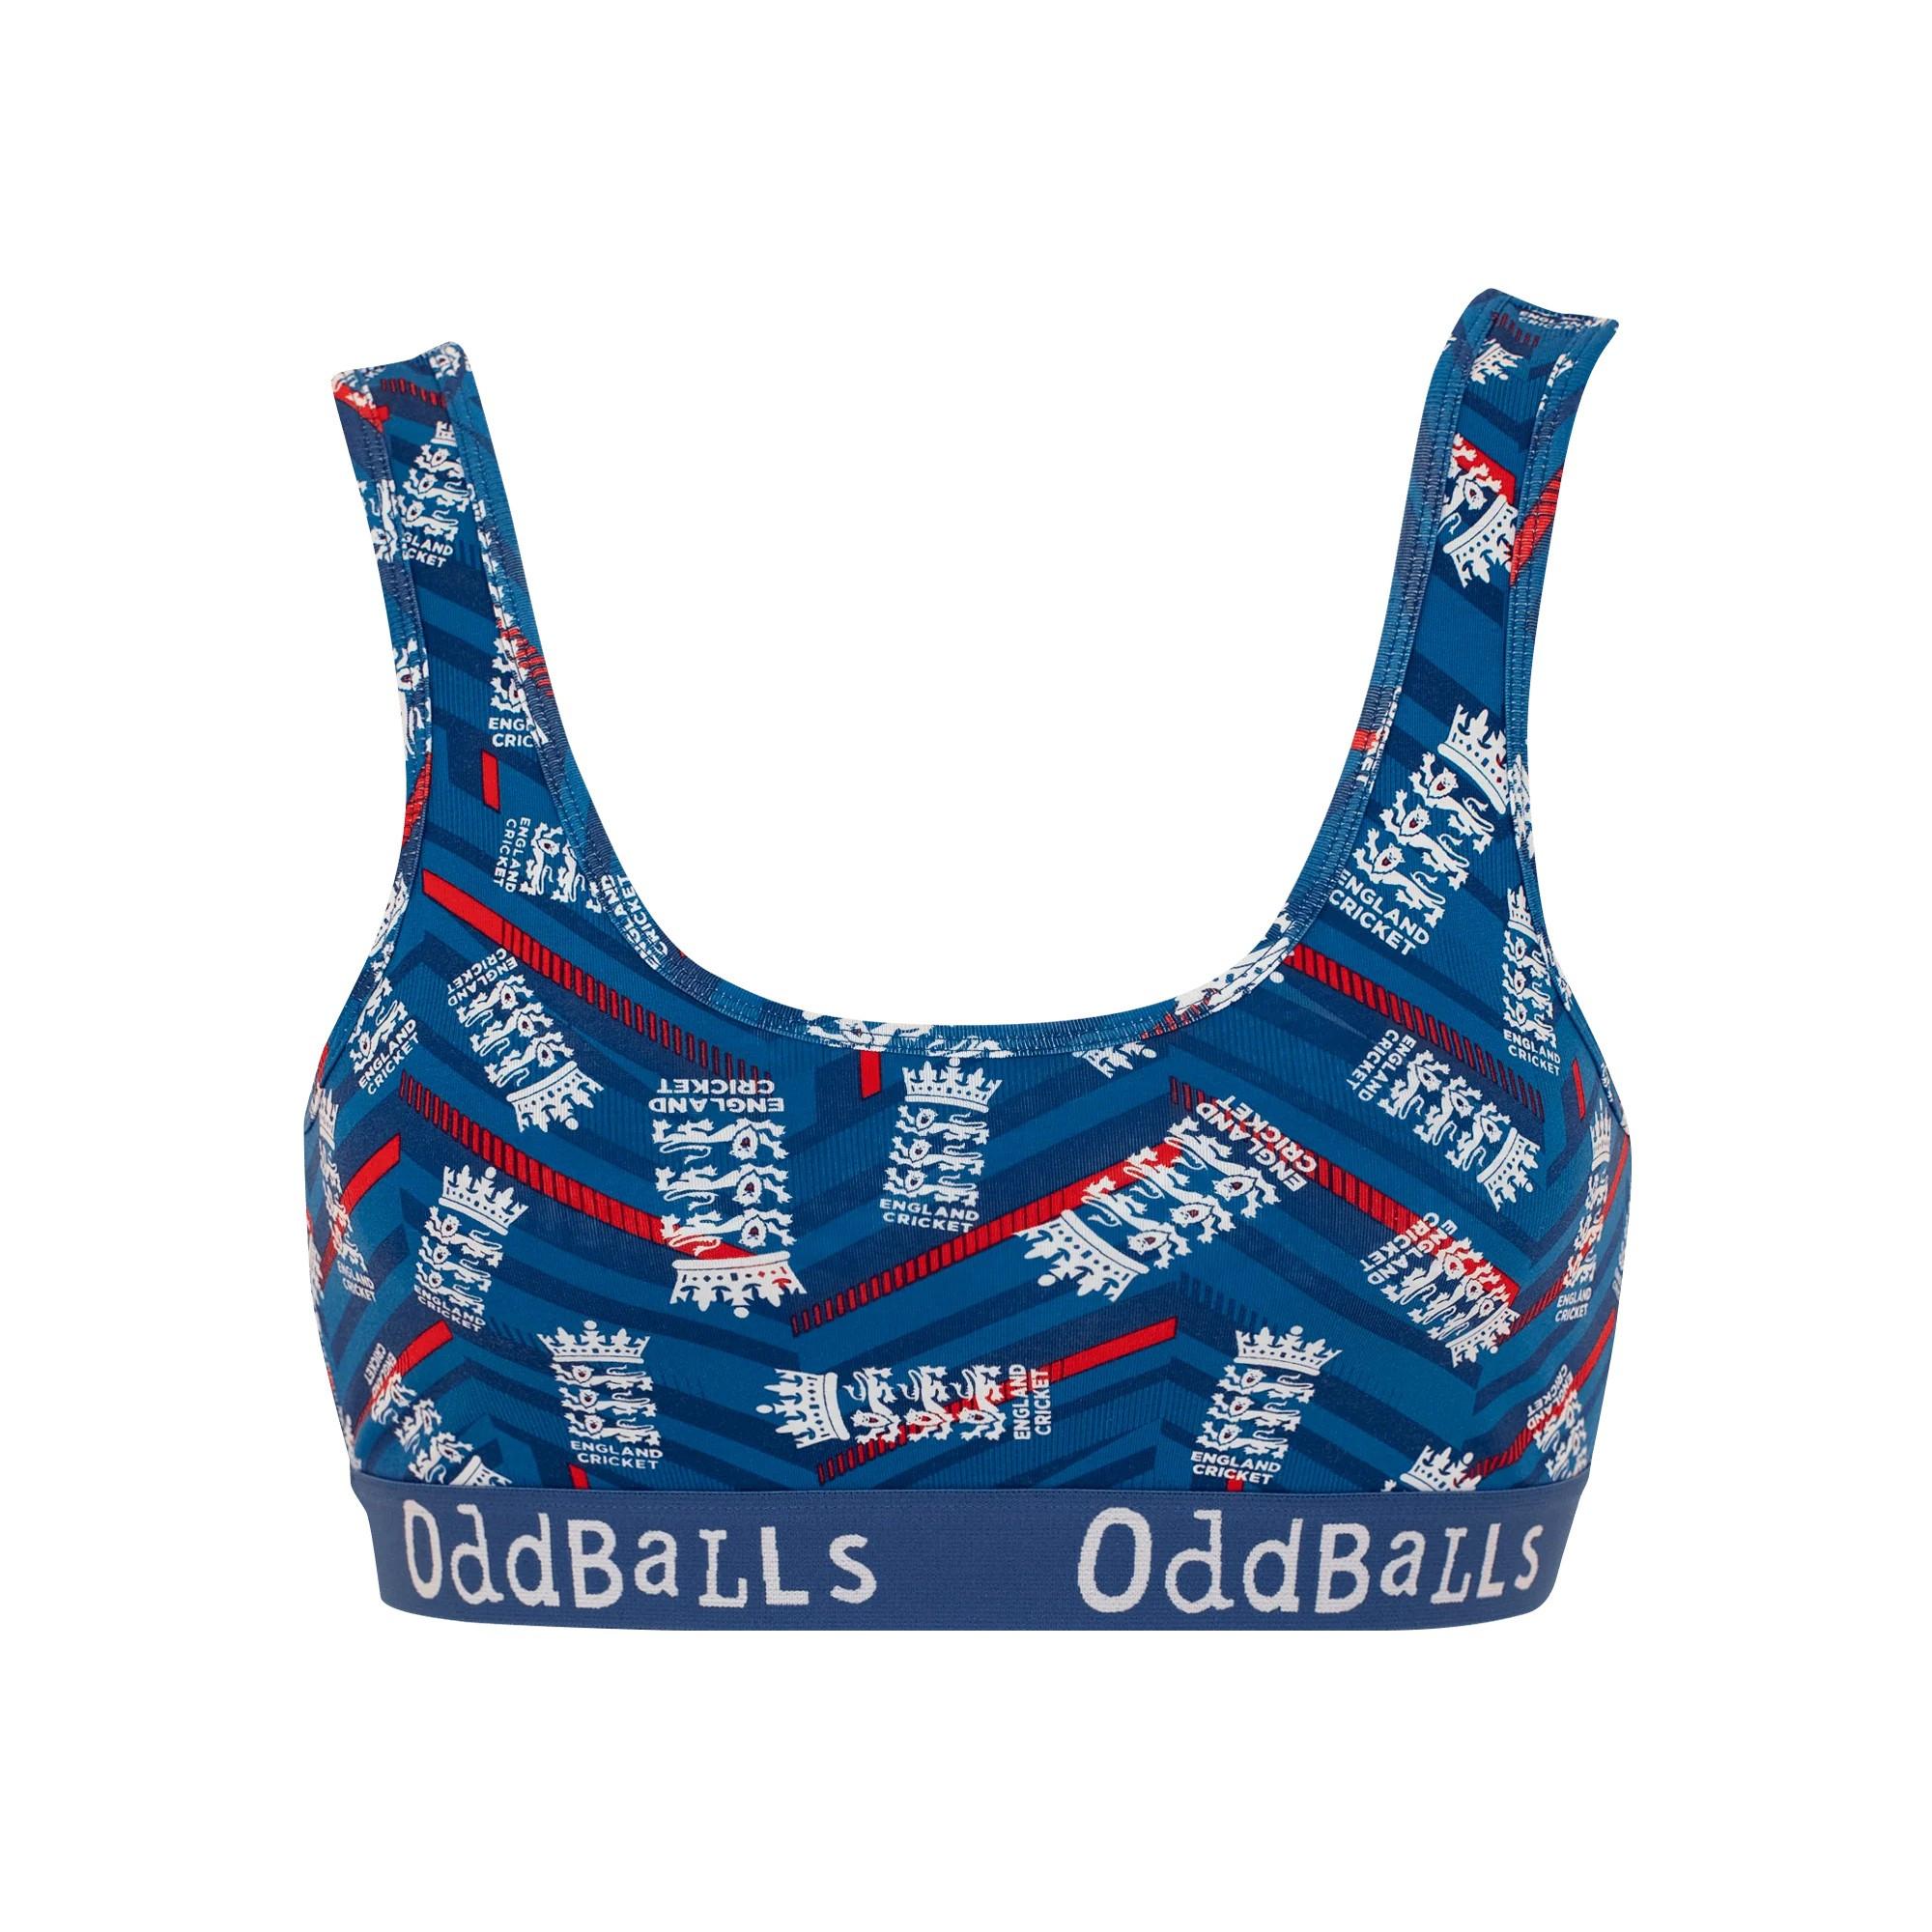 OddBalls  ODI Inspired Bralette 